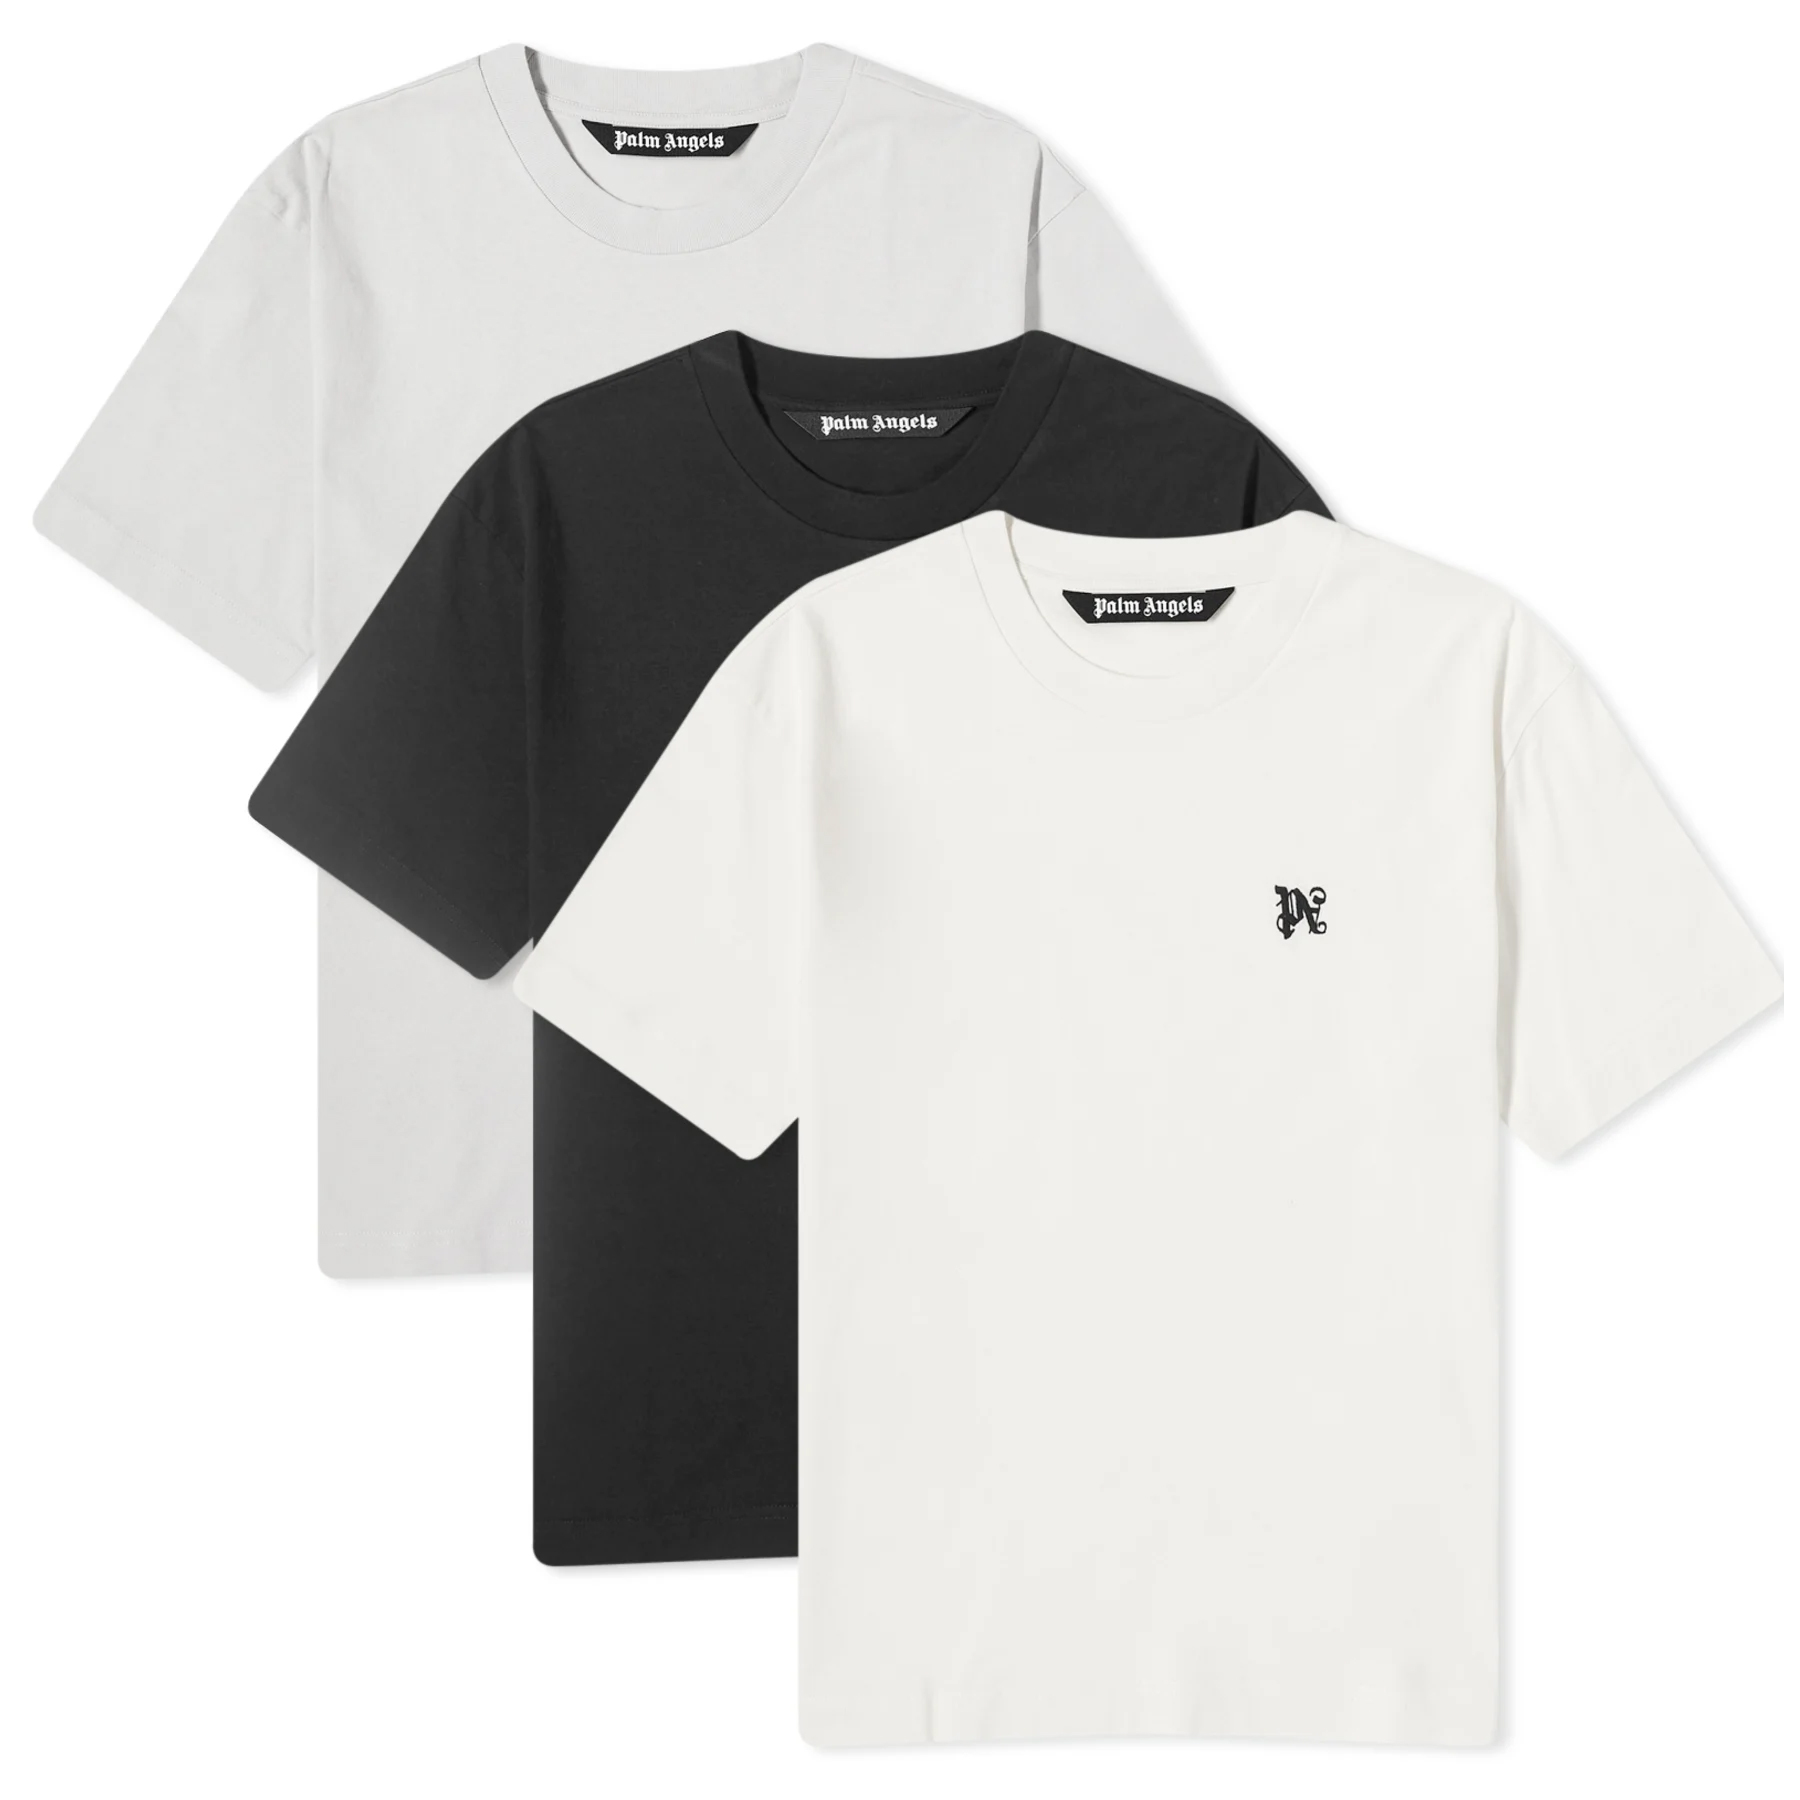 Набор футболок Palm Angels Mini Logo Multi Pack Tees, 3 штуки цена и фото